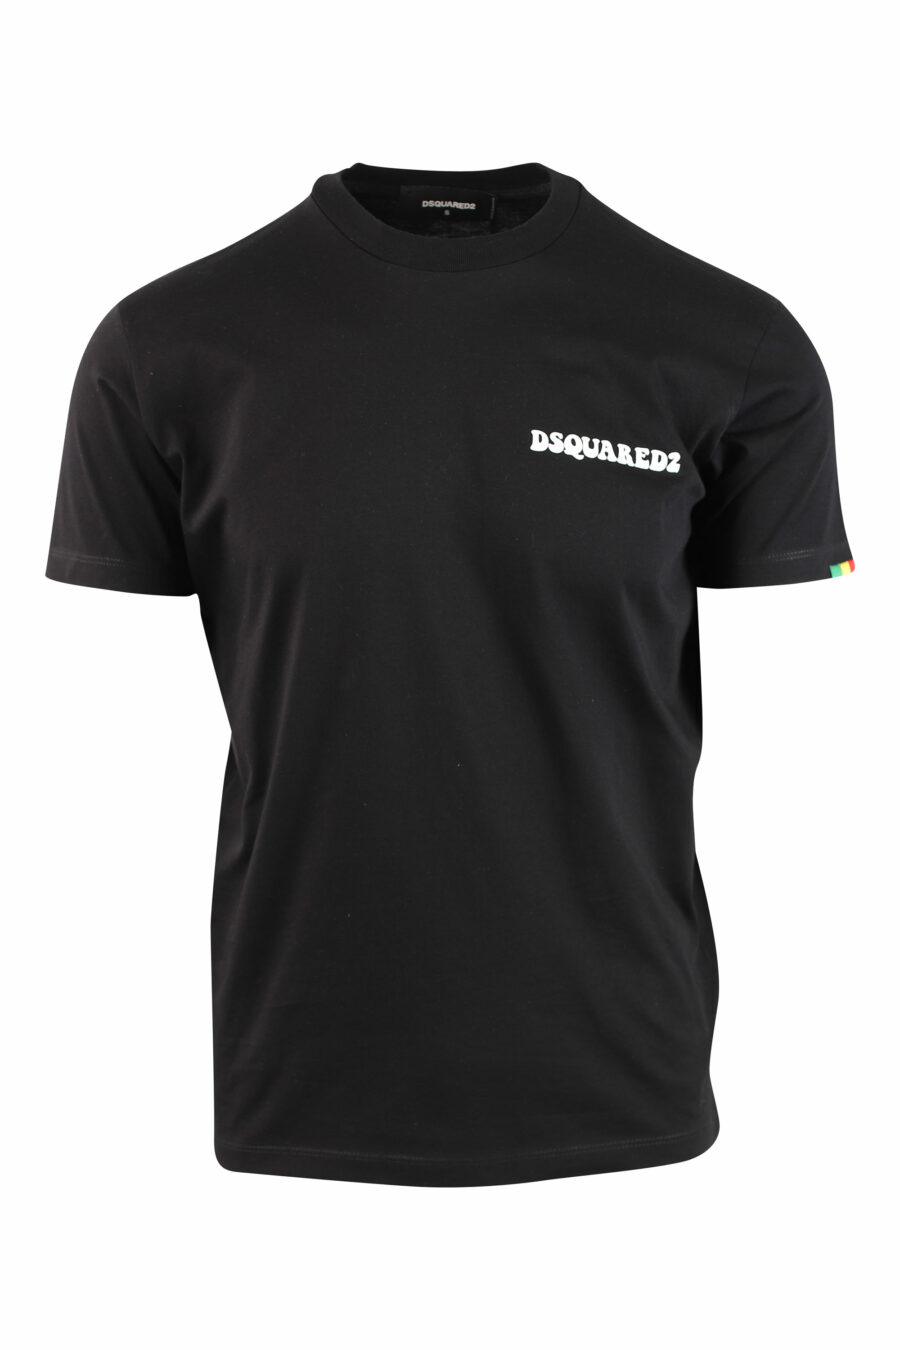 T-shirt preta com minilogo - IMG 9994